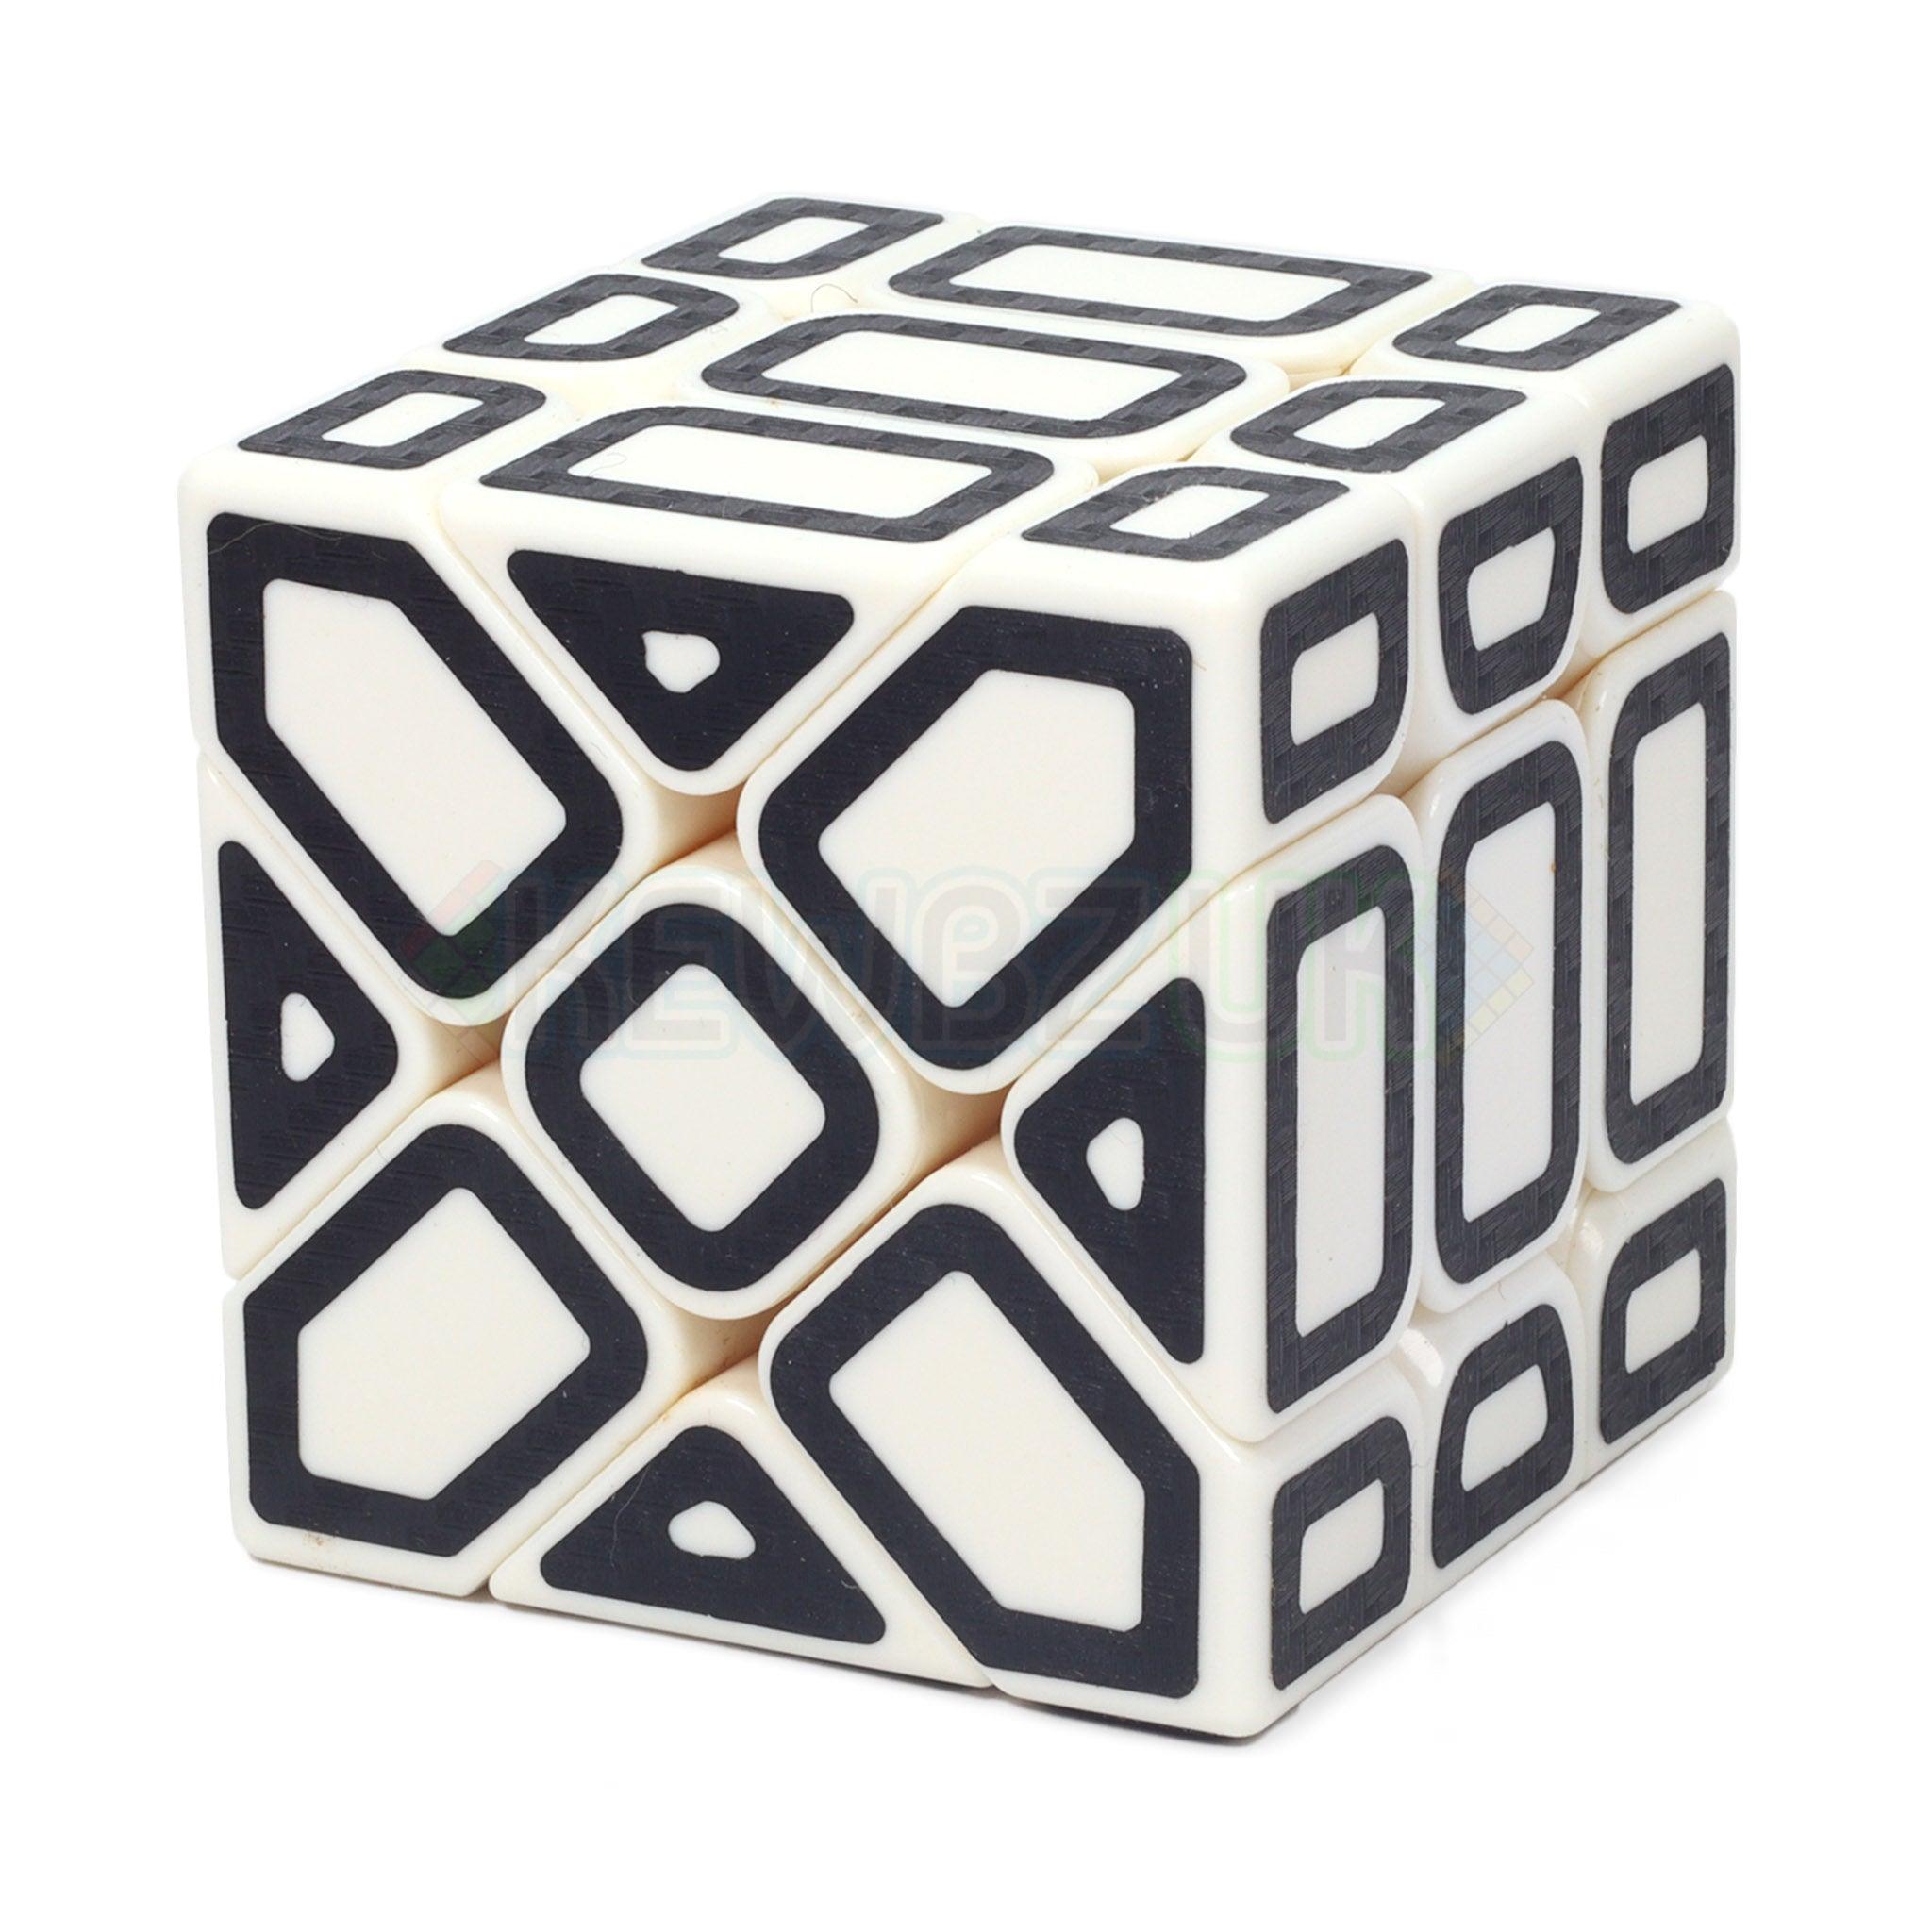 LeFun Fisher Cube